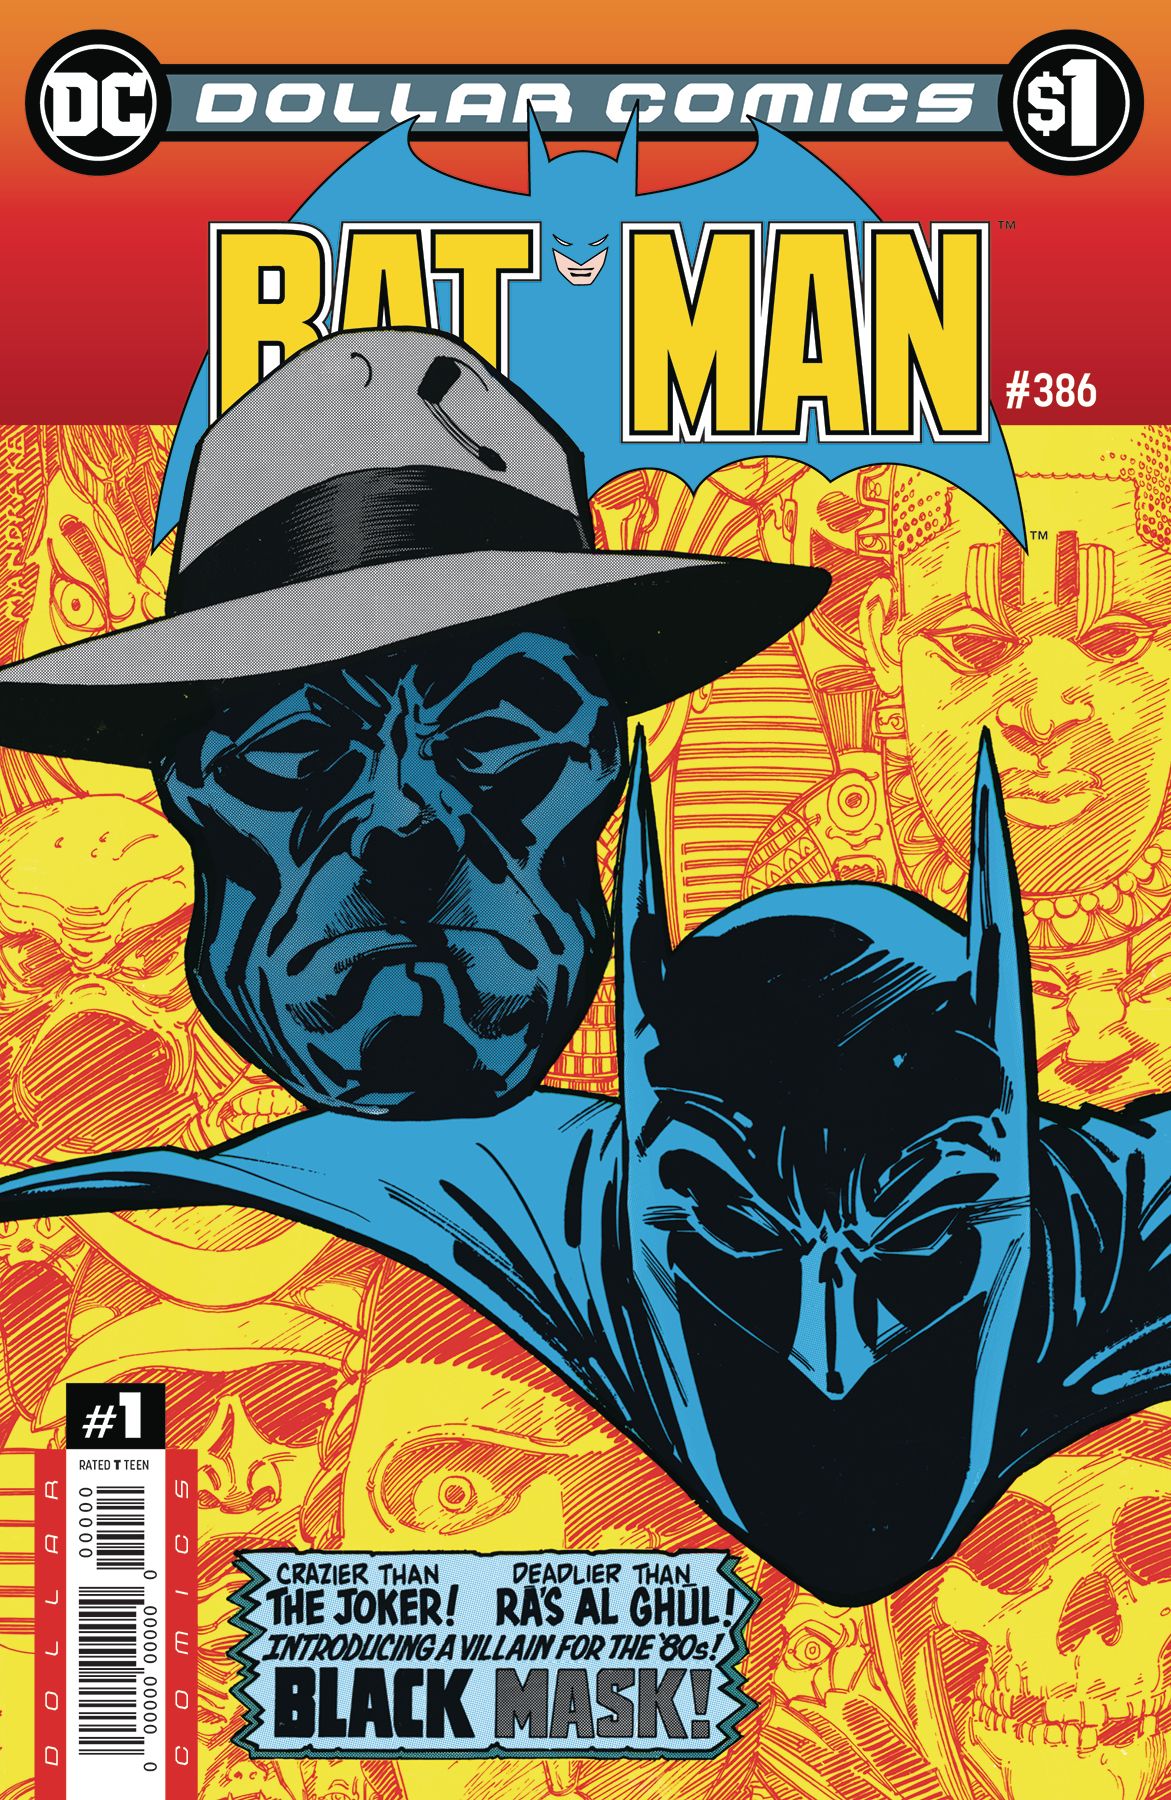 Dollar Comics: Batman #386 Comic